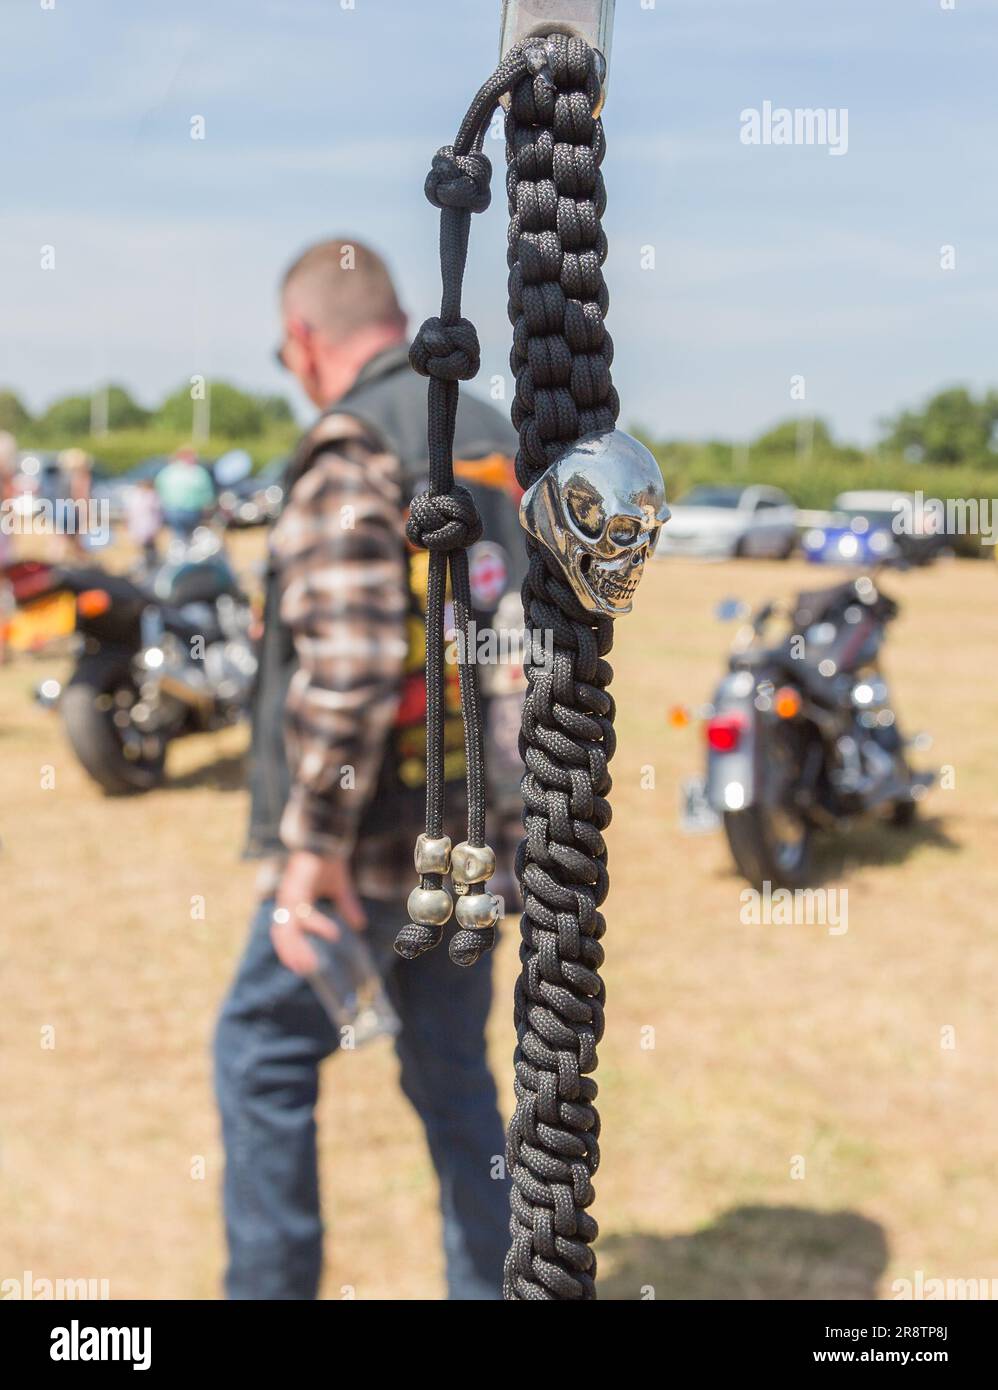 Ein silberner Schädel auf einer schwarzen geflochtenen Kette, die an einem Motorradlenker hängt. Ein Biker, der vorbeiläuft und ein Bierglas hält, verleiht der Szene ein ausgefallenes Gefühl. Stockfoto